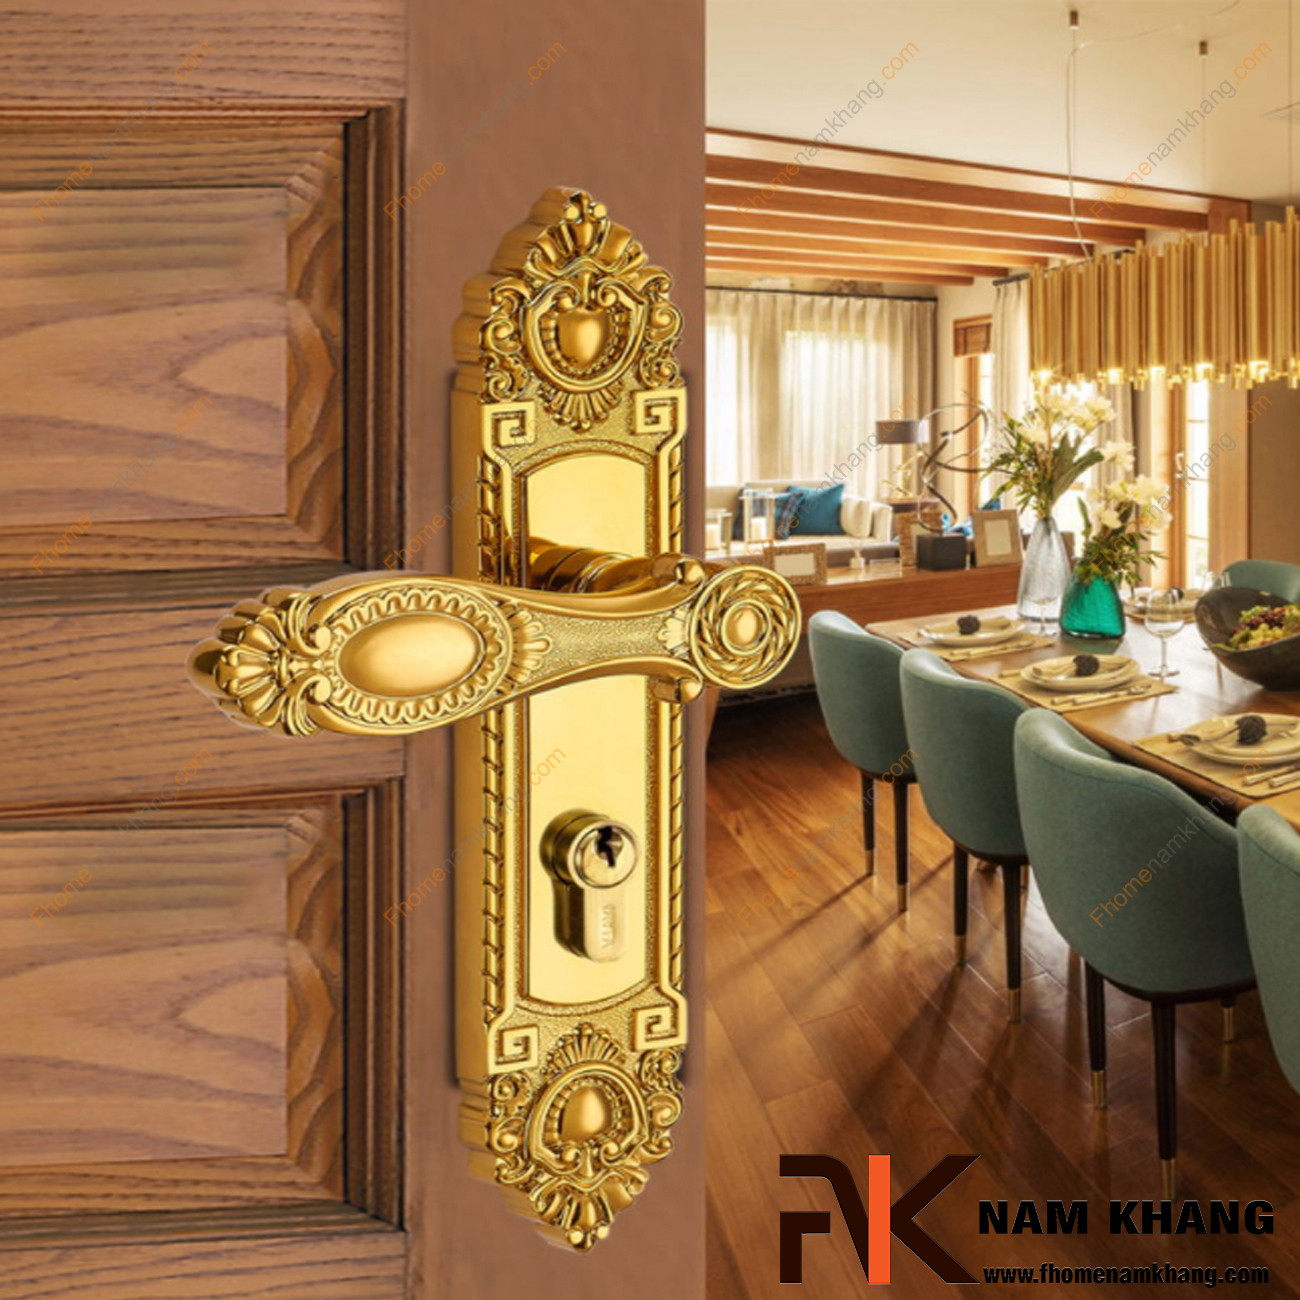 Khóa cửa chính cổ điển bằng đồng cao cấp NK190L-PVD - Sản phẩm khóa cửa chính được sử dụng chủ yếu cho cửa gỗ lớn, cao cấp, 2 hoặc 4 cánh.